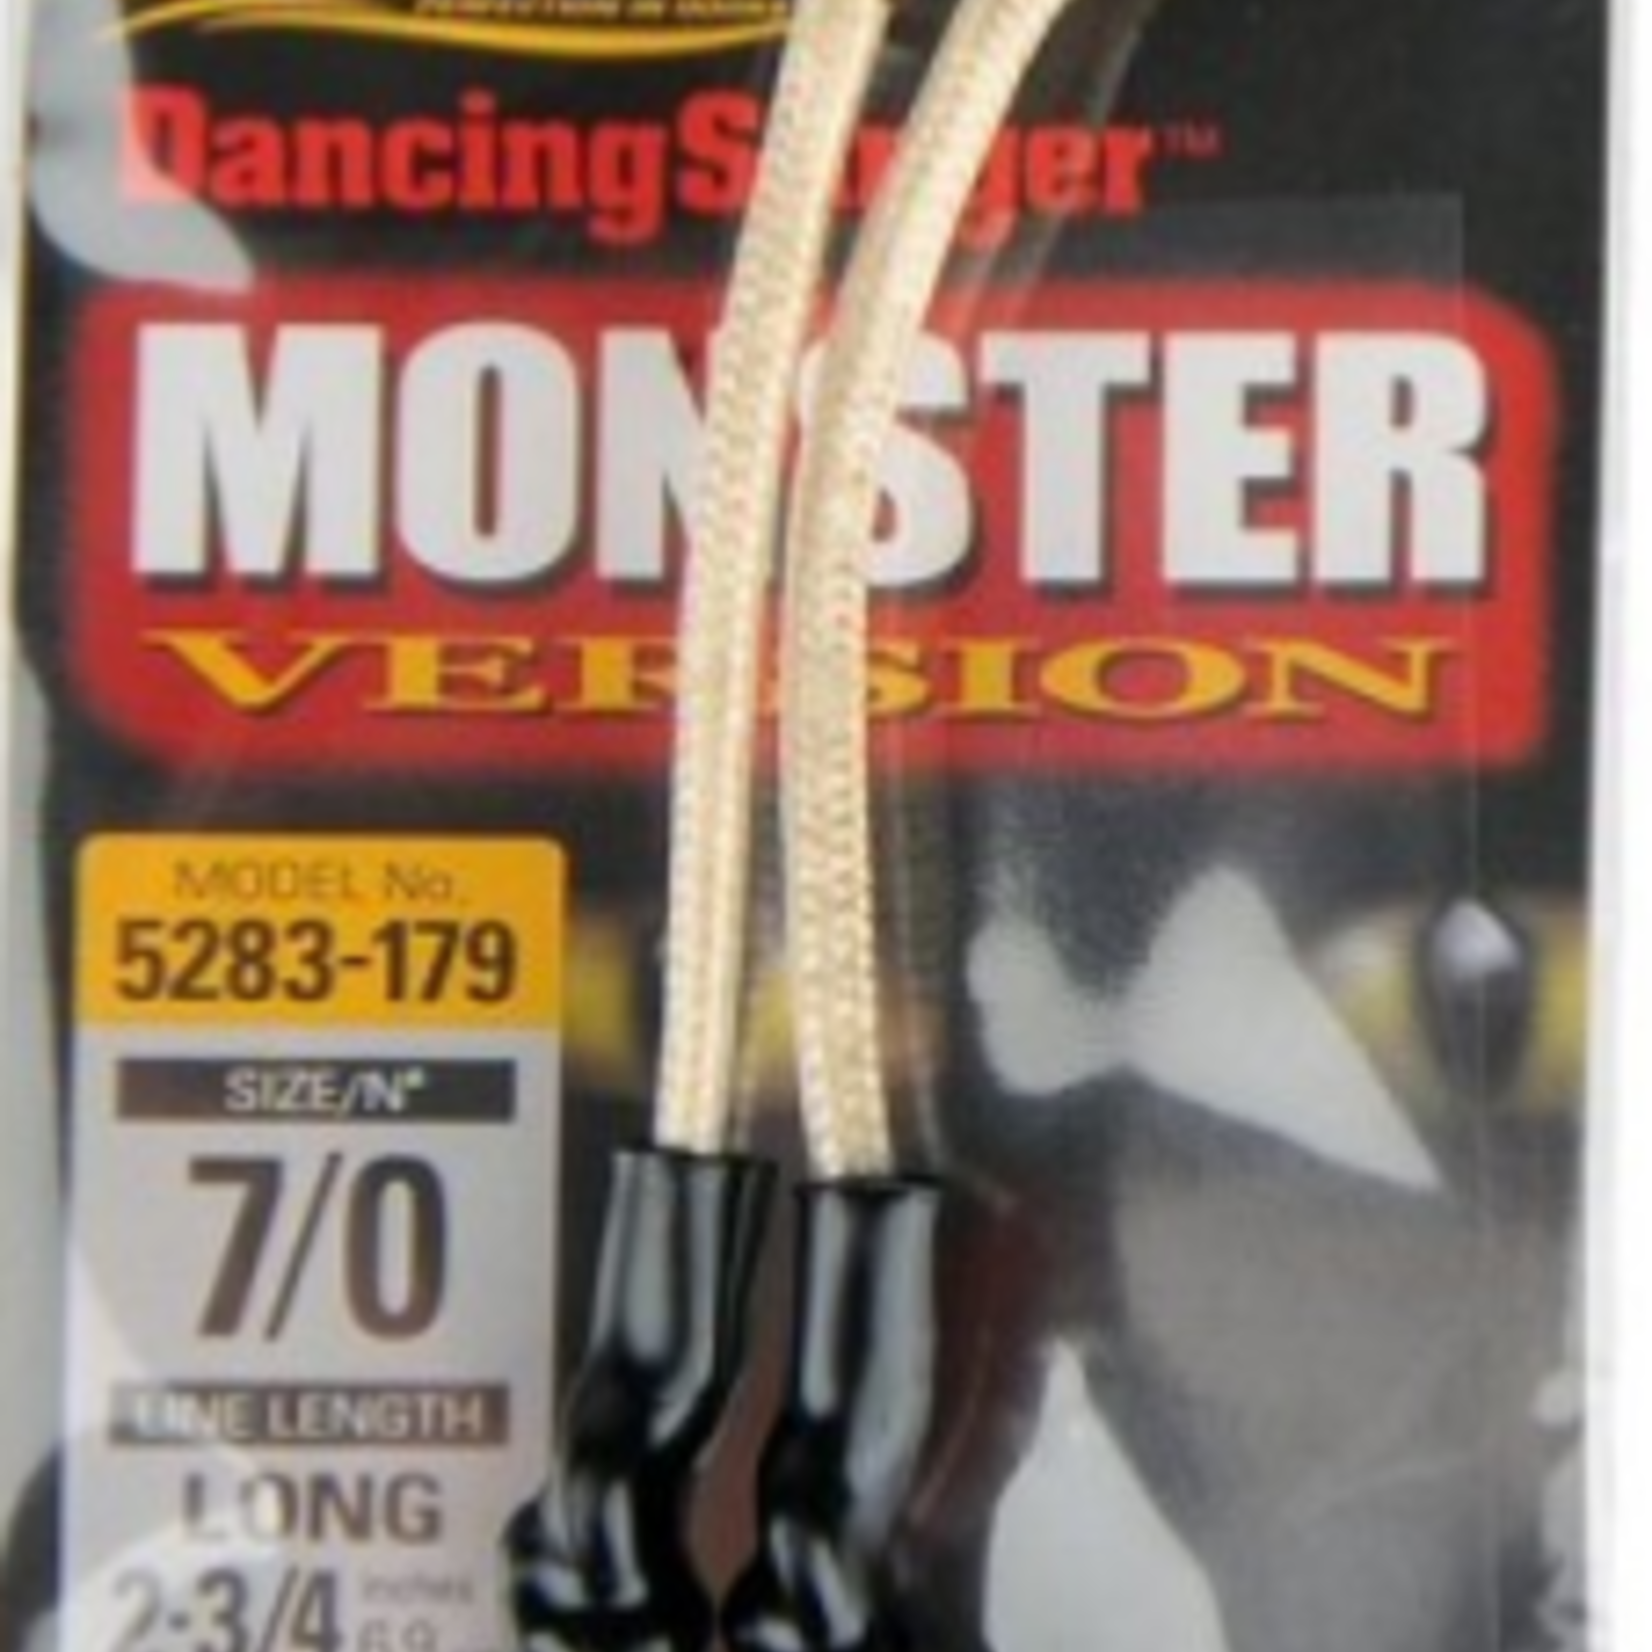 Dancing Stinger Monster Version